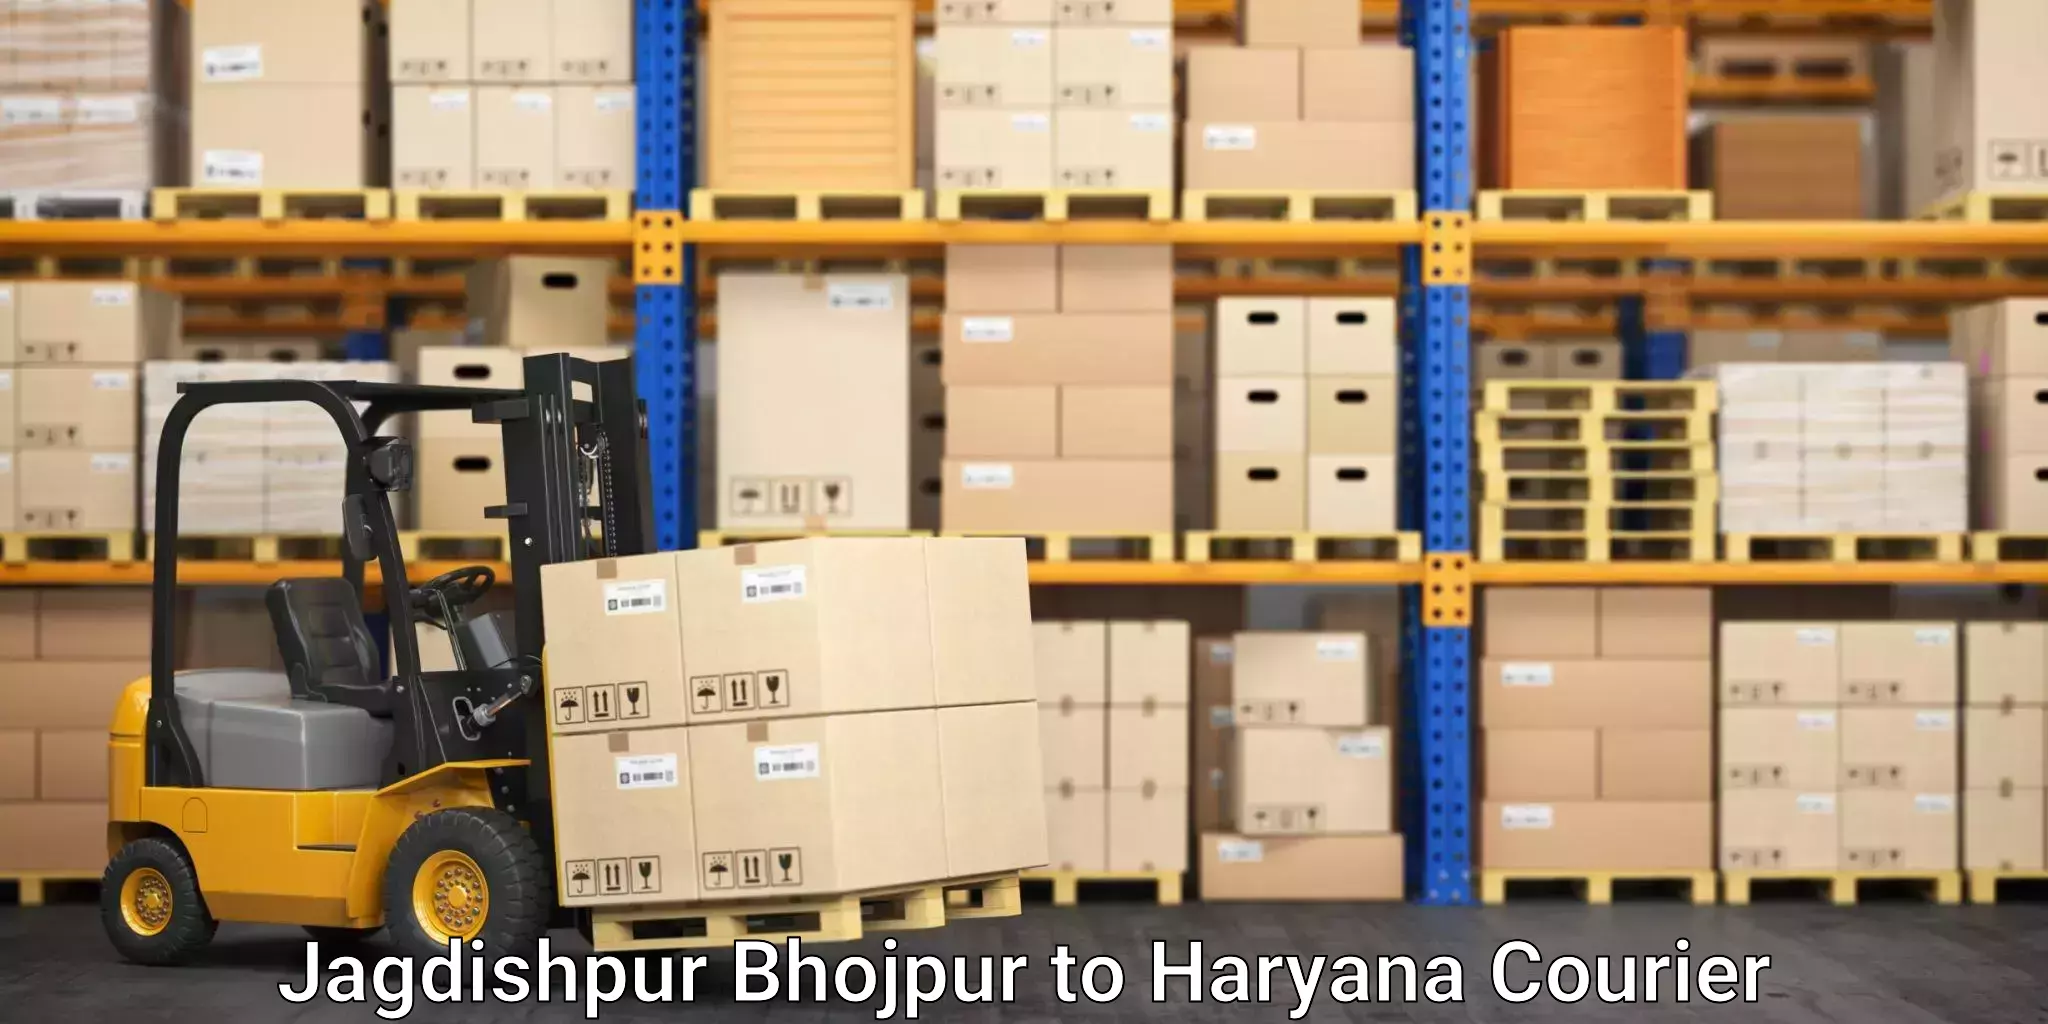 Furniture transport specialists in Jagdishpur Bhojpur to Chandi Rohtak